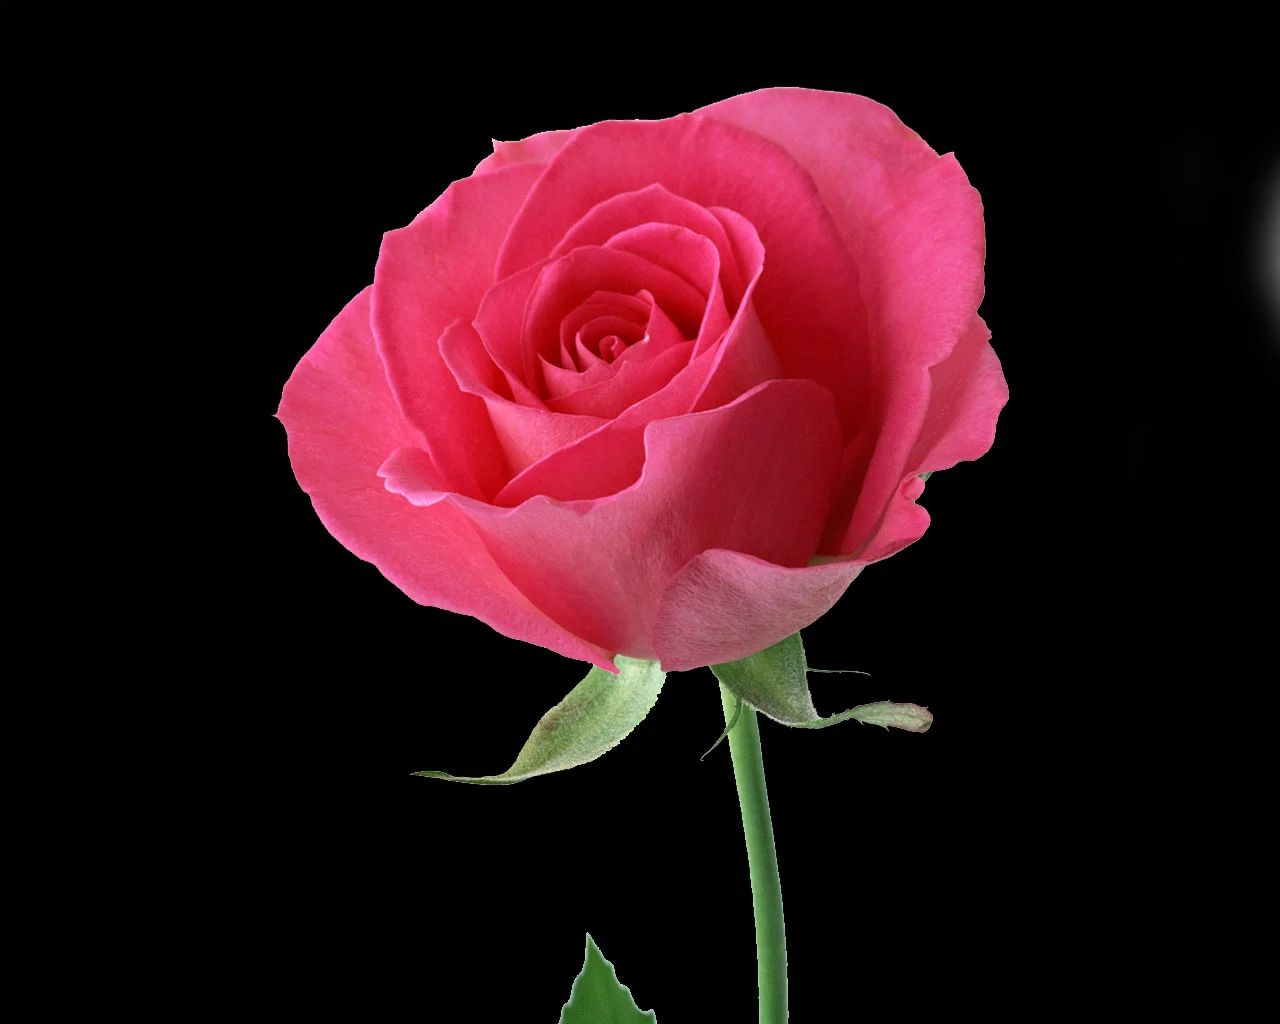 101 hình ảnh hoa hồng đen đẹp, chất lượng cao, tải miễn phí